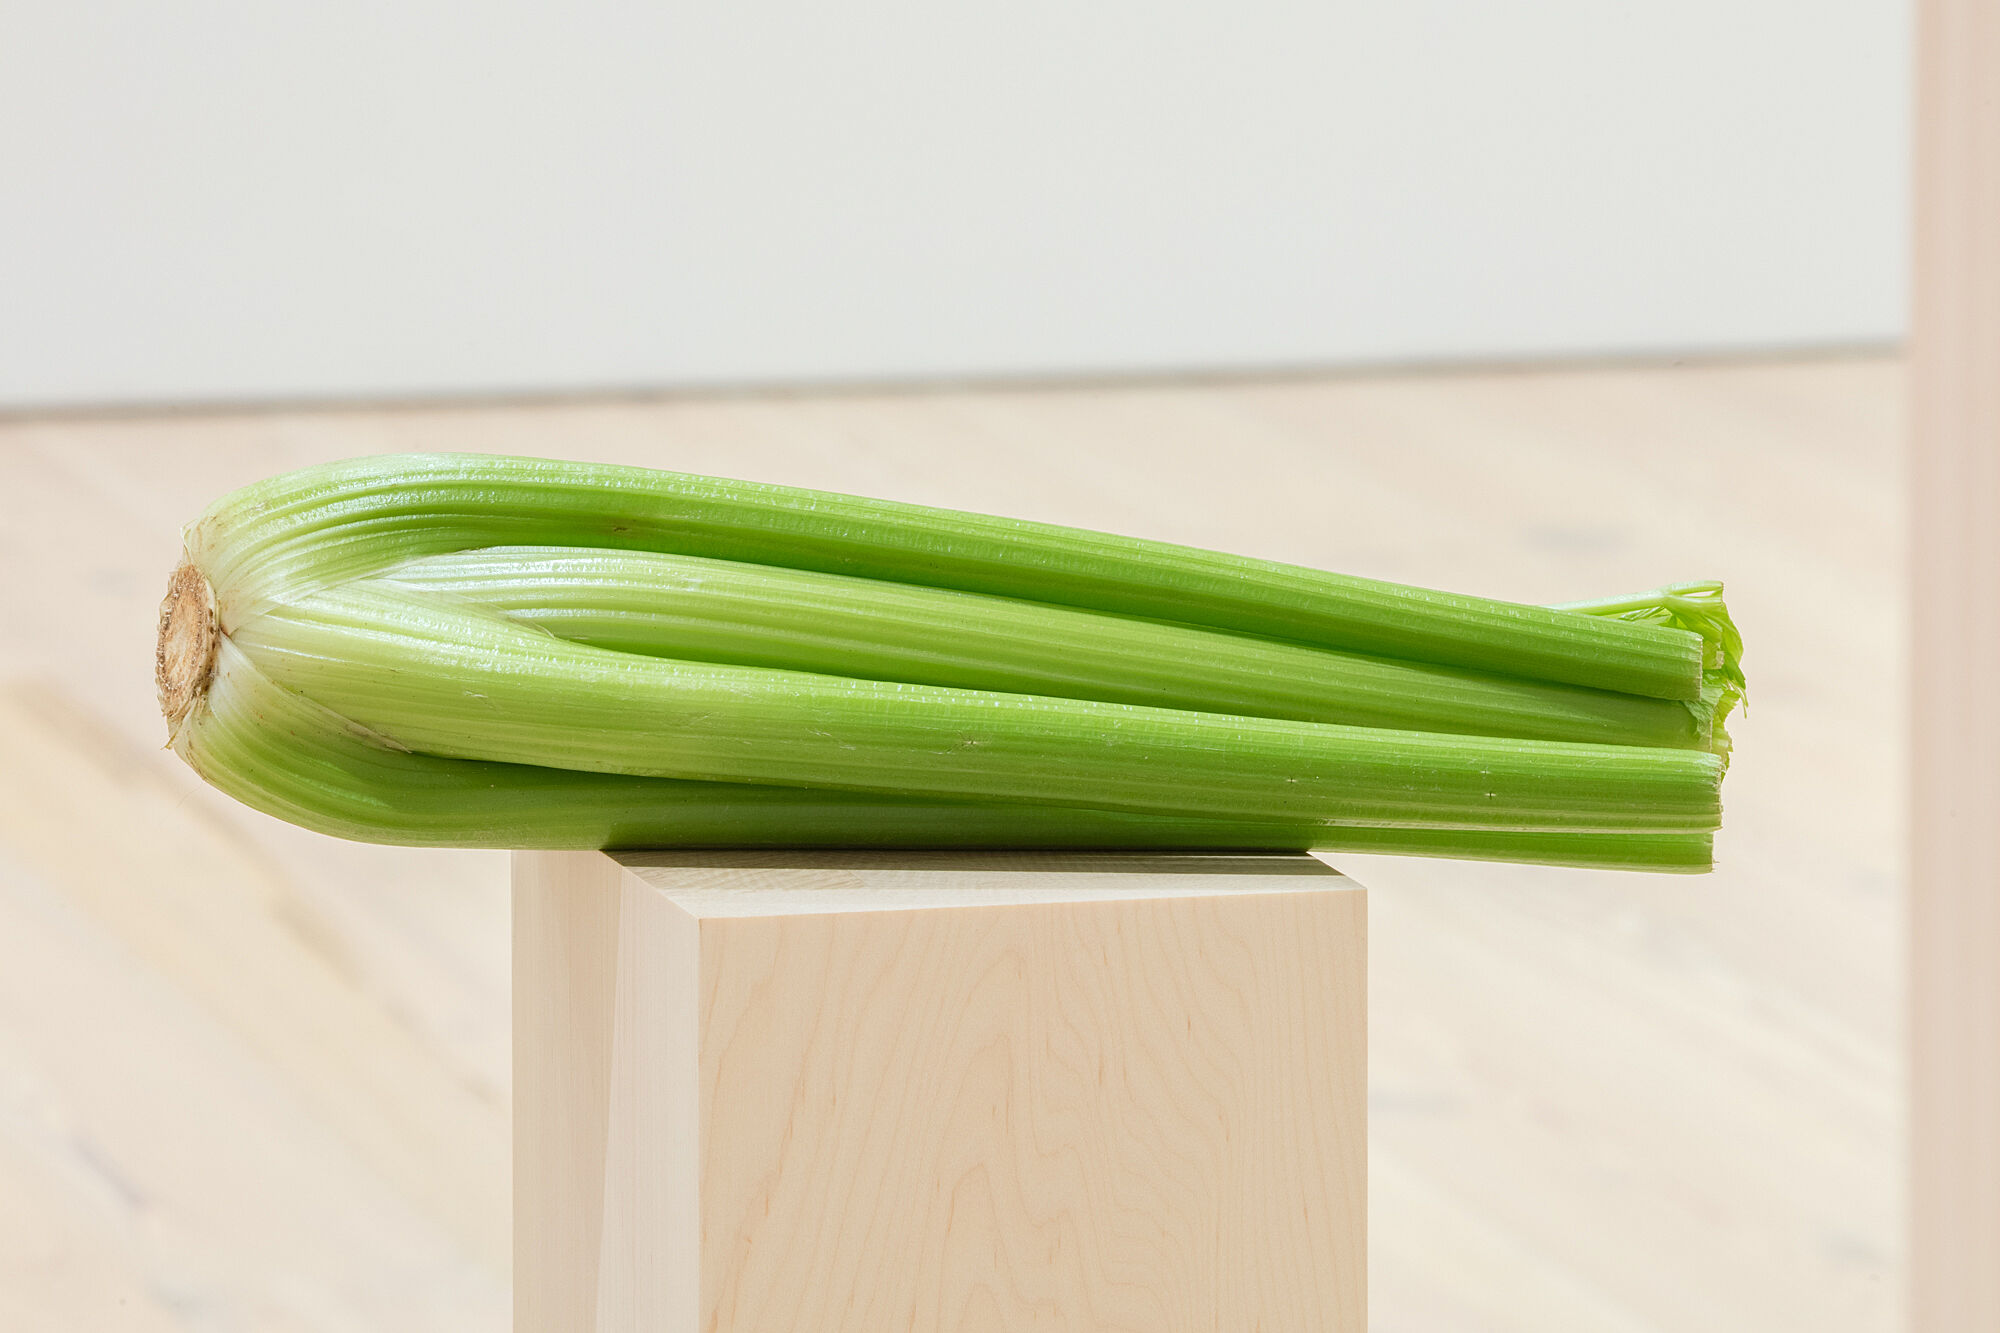 A photo of celery on a plinth.